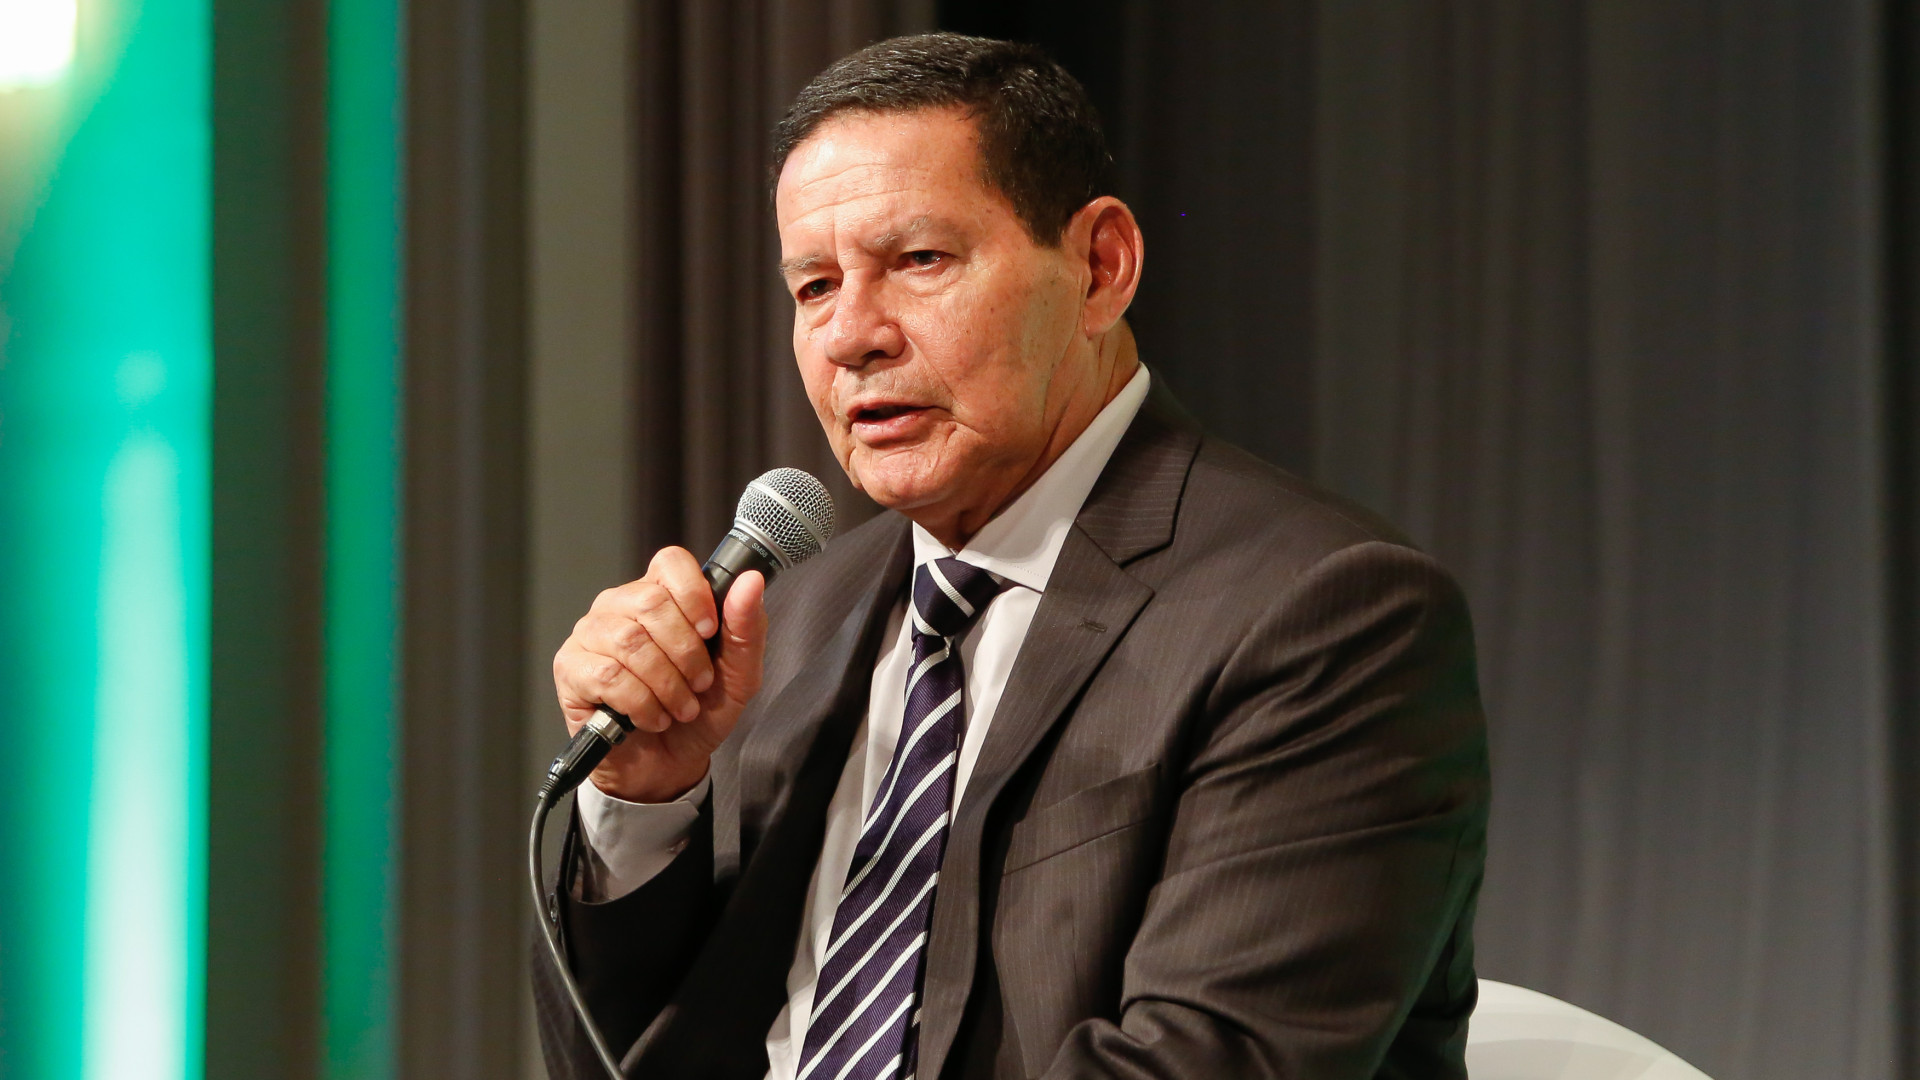 Mourão defende bioeconomia na Amazônia em reunião com investidores internacionais